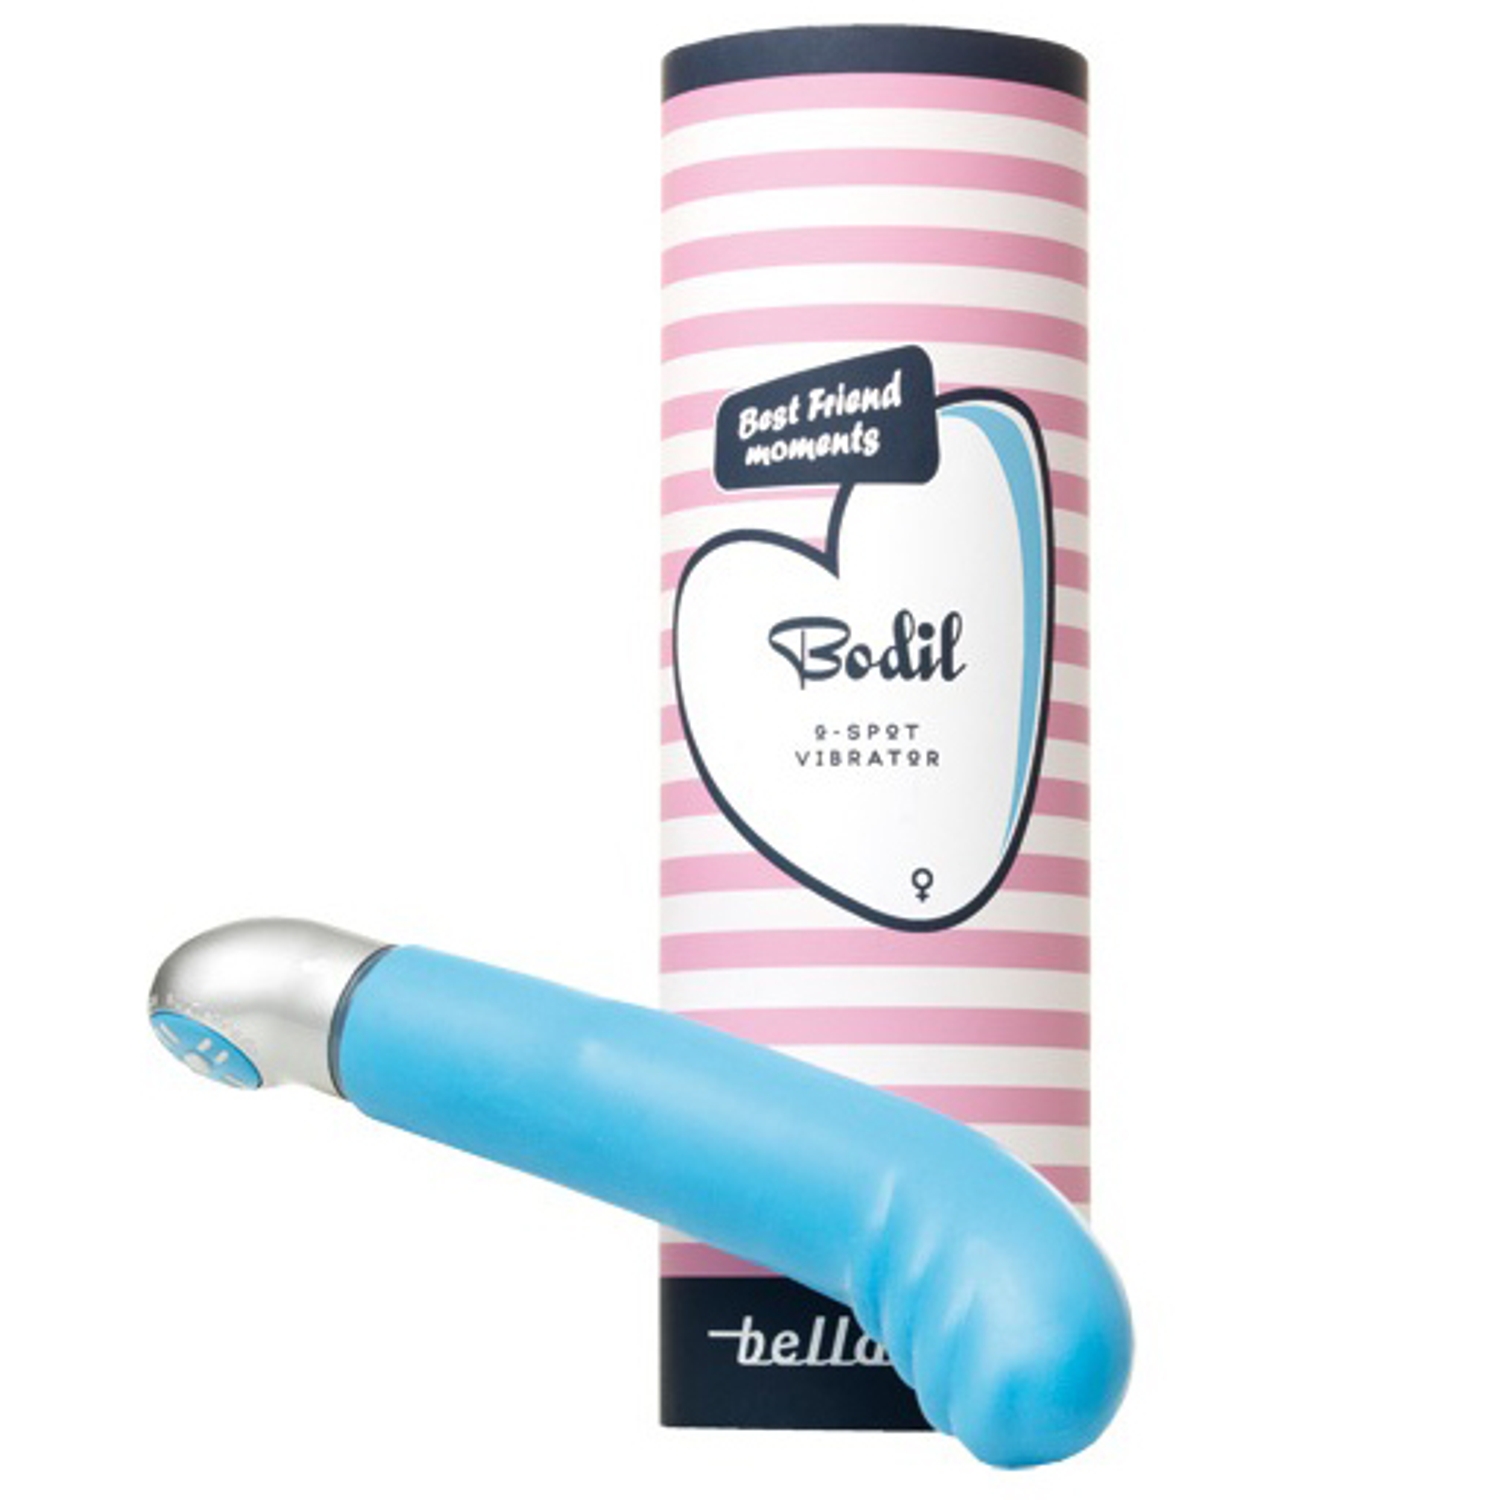 Belladot Bodil G-punkts Vibrator - Blue thumbnail